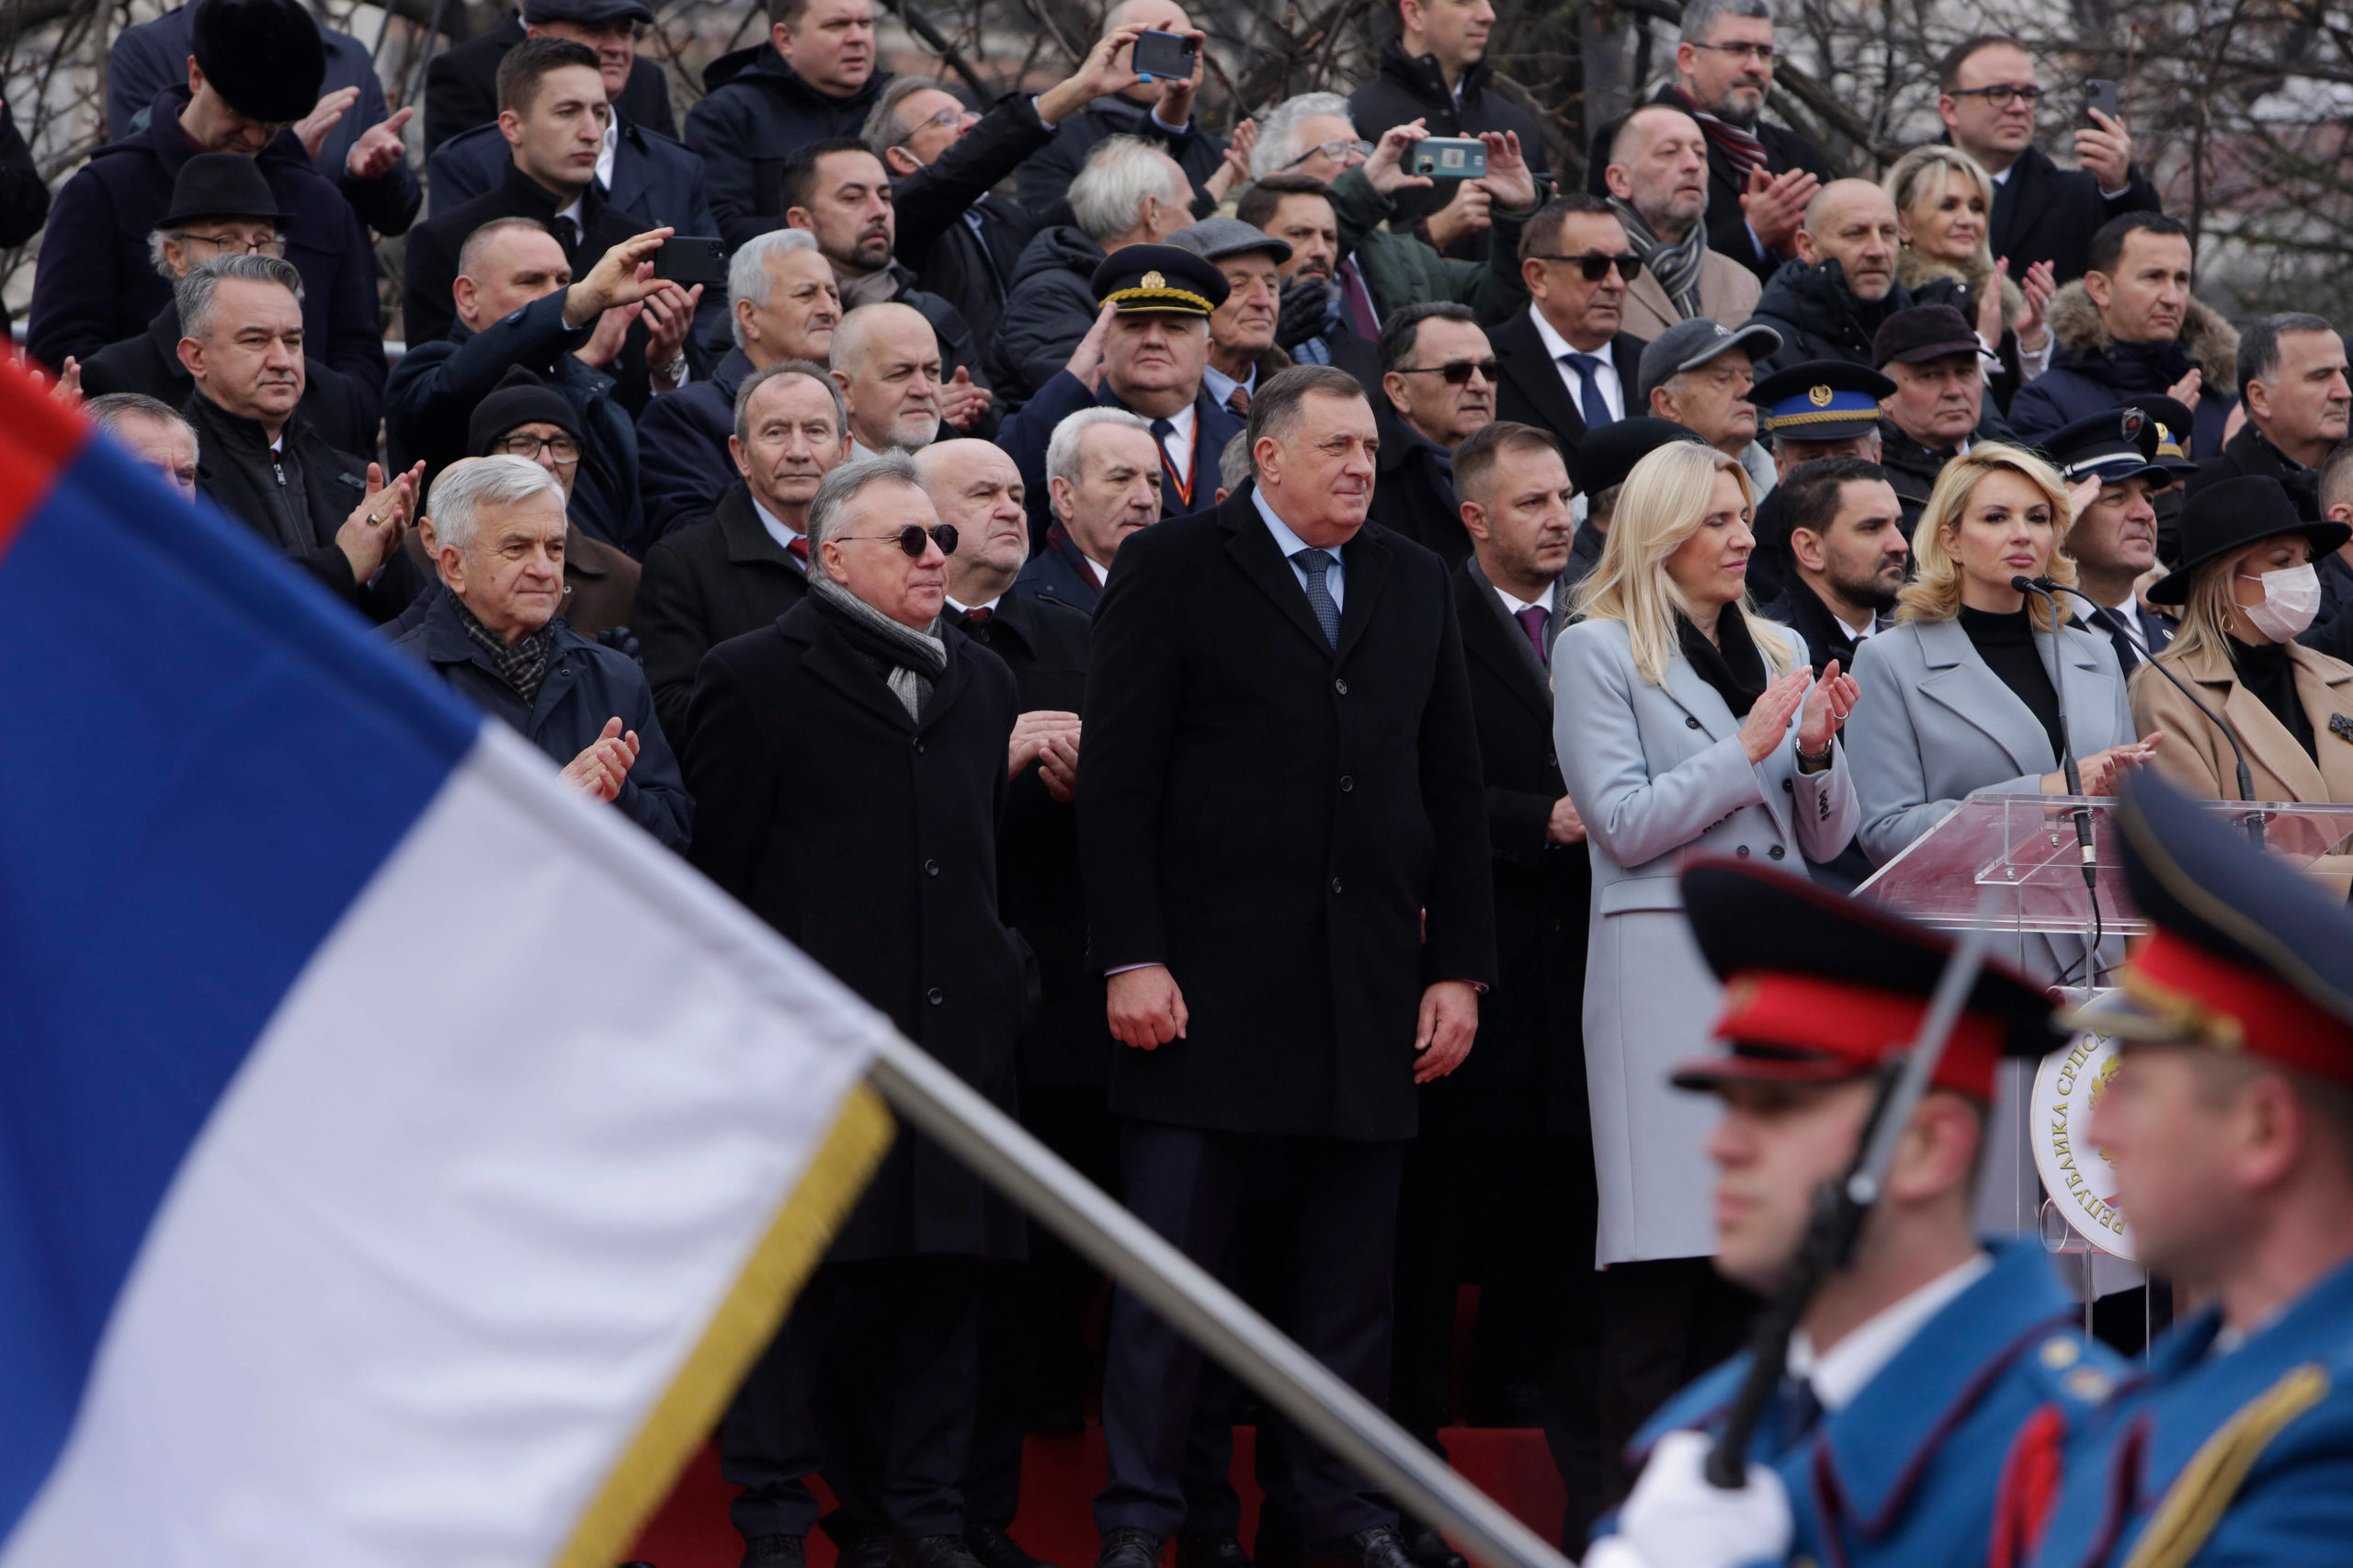 Presidentti Milorad Dodik (edessä keskellä) seurasi sotilasparaatia Banja Lukassa tammikuussa. Kuva: AMEL EMRIC/SIPA/ALL OVER PRESS